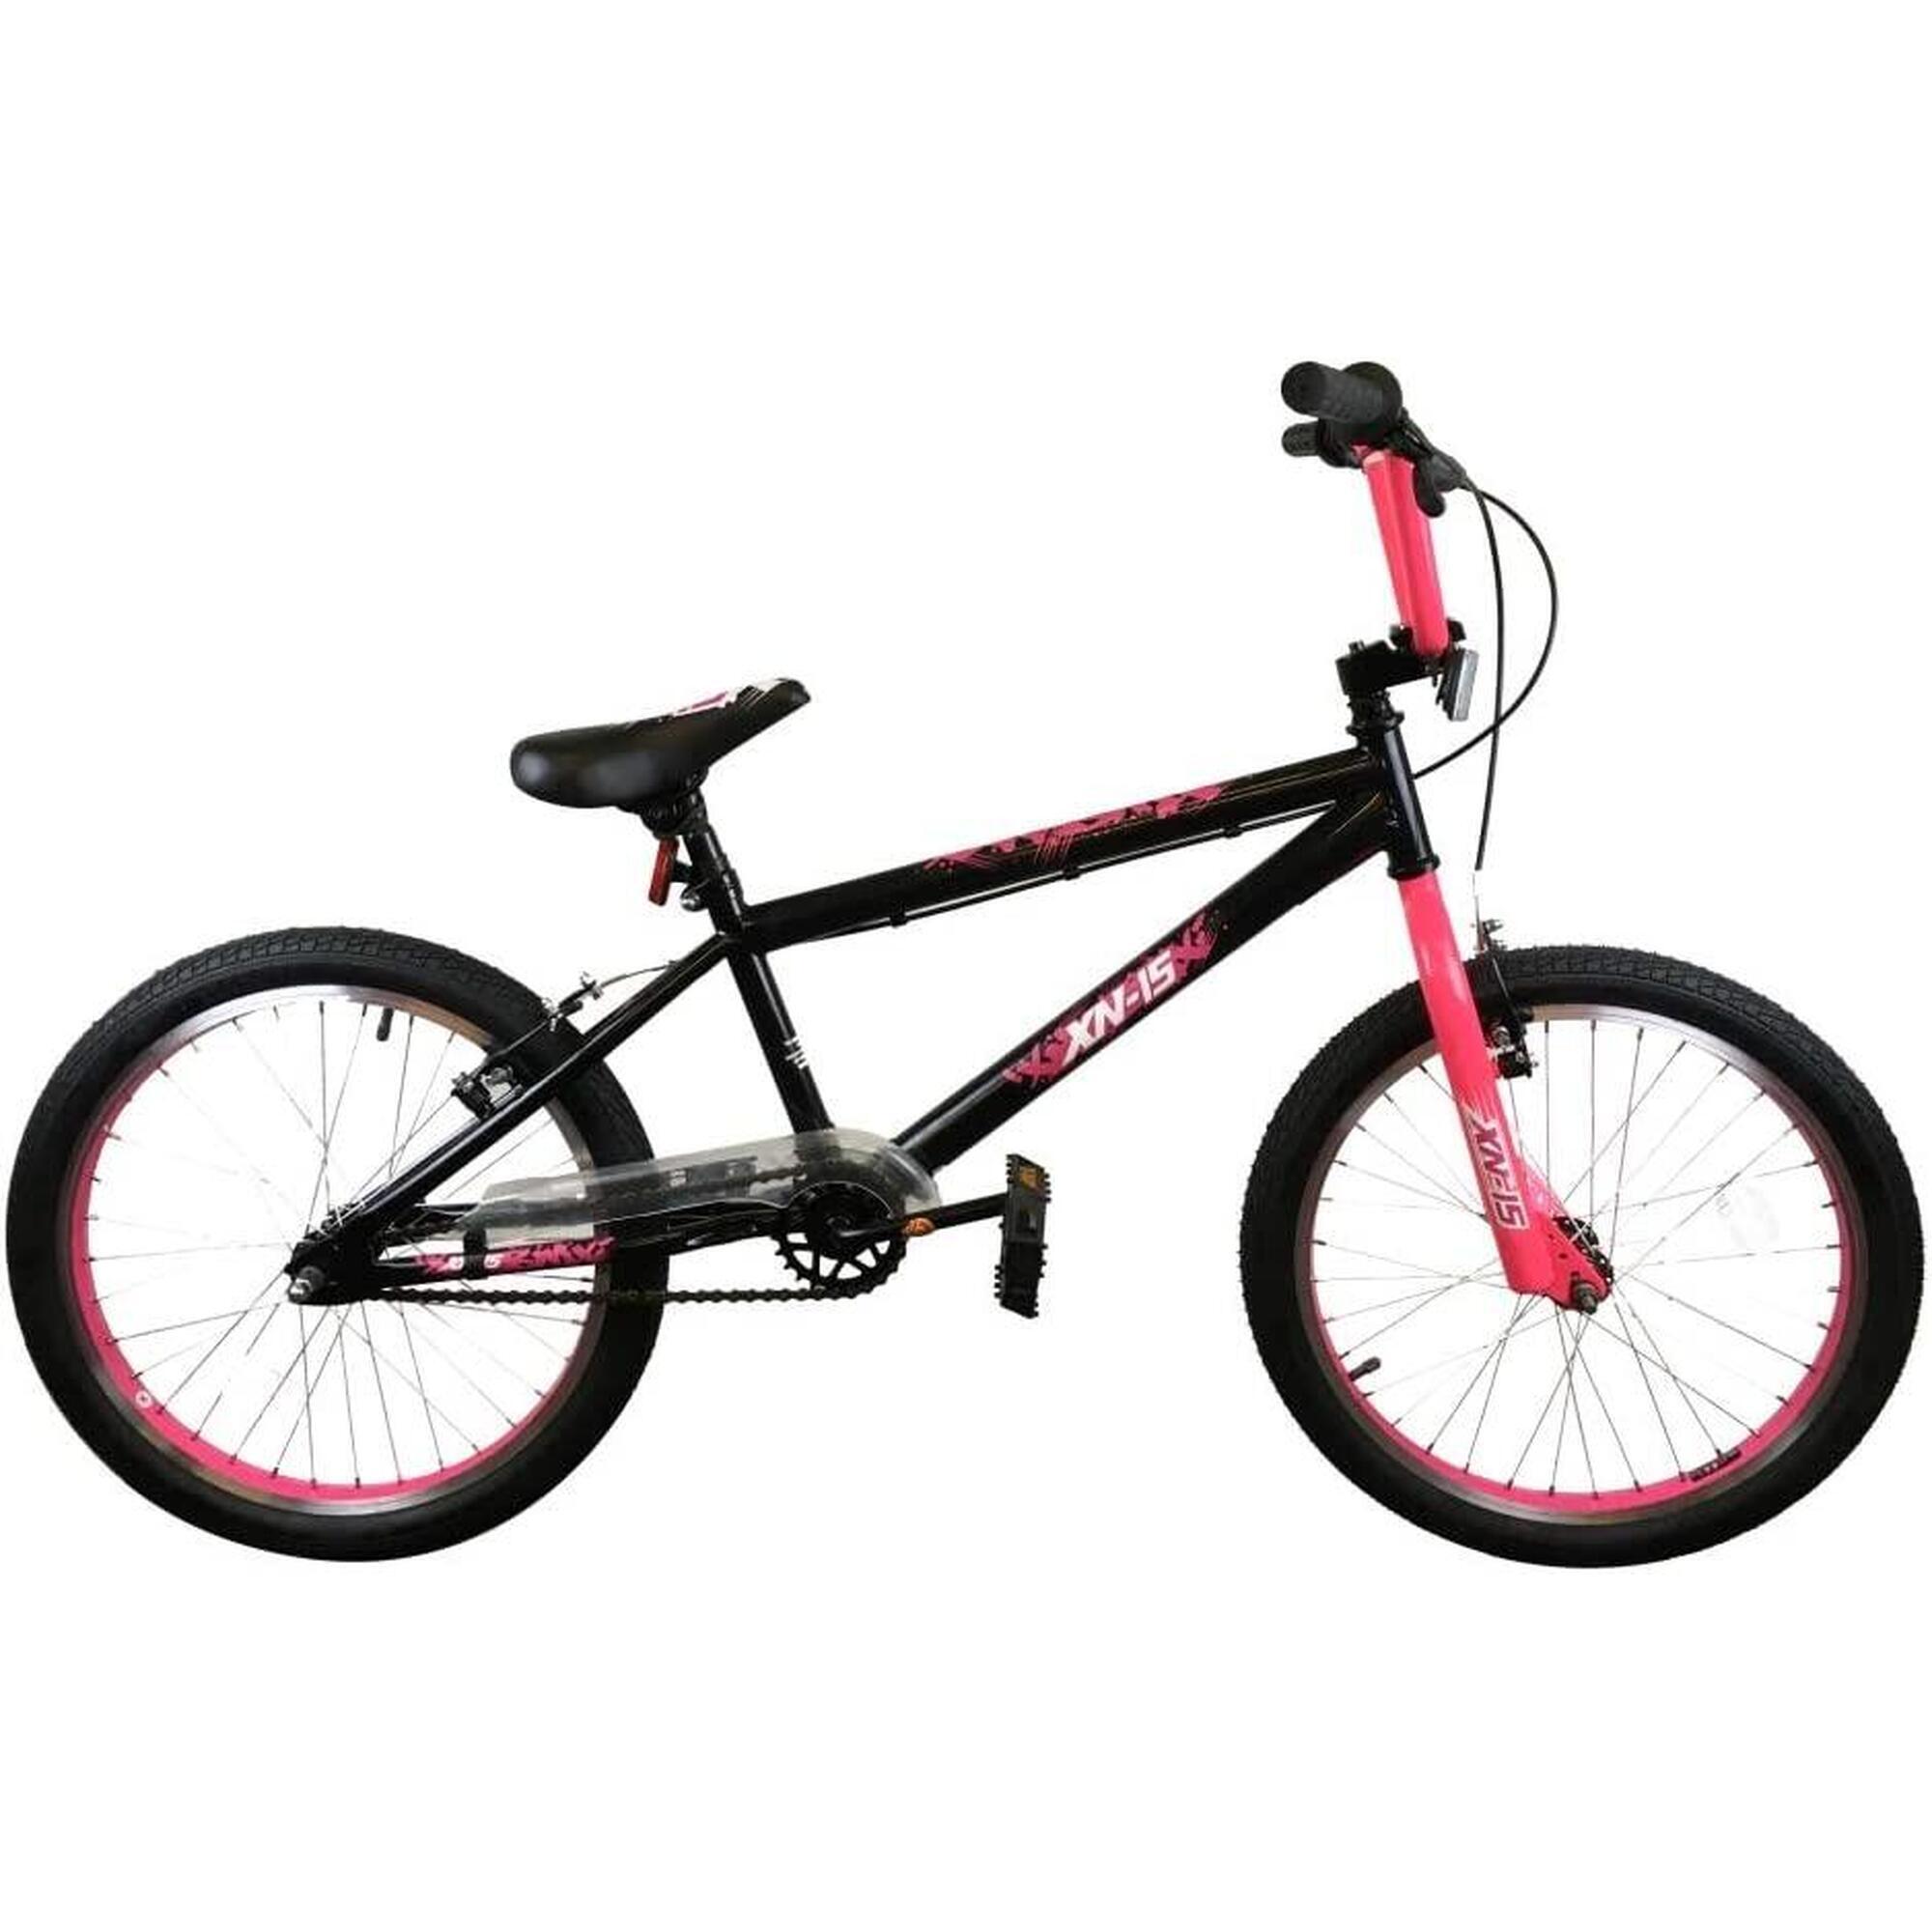 XN XN-15-20 Kids 20In BMX Bike - Black/Flu Pink